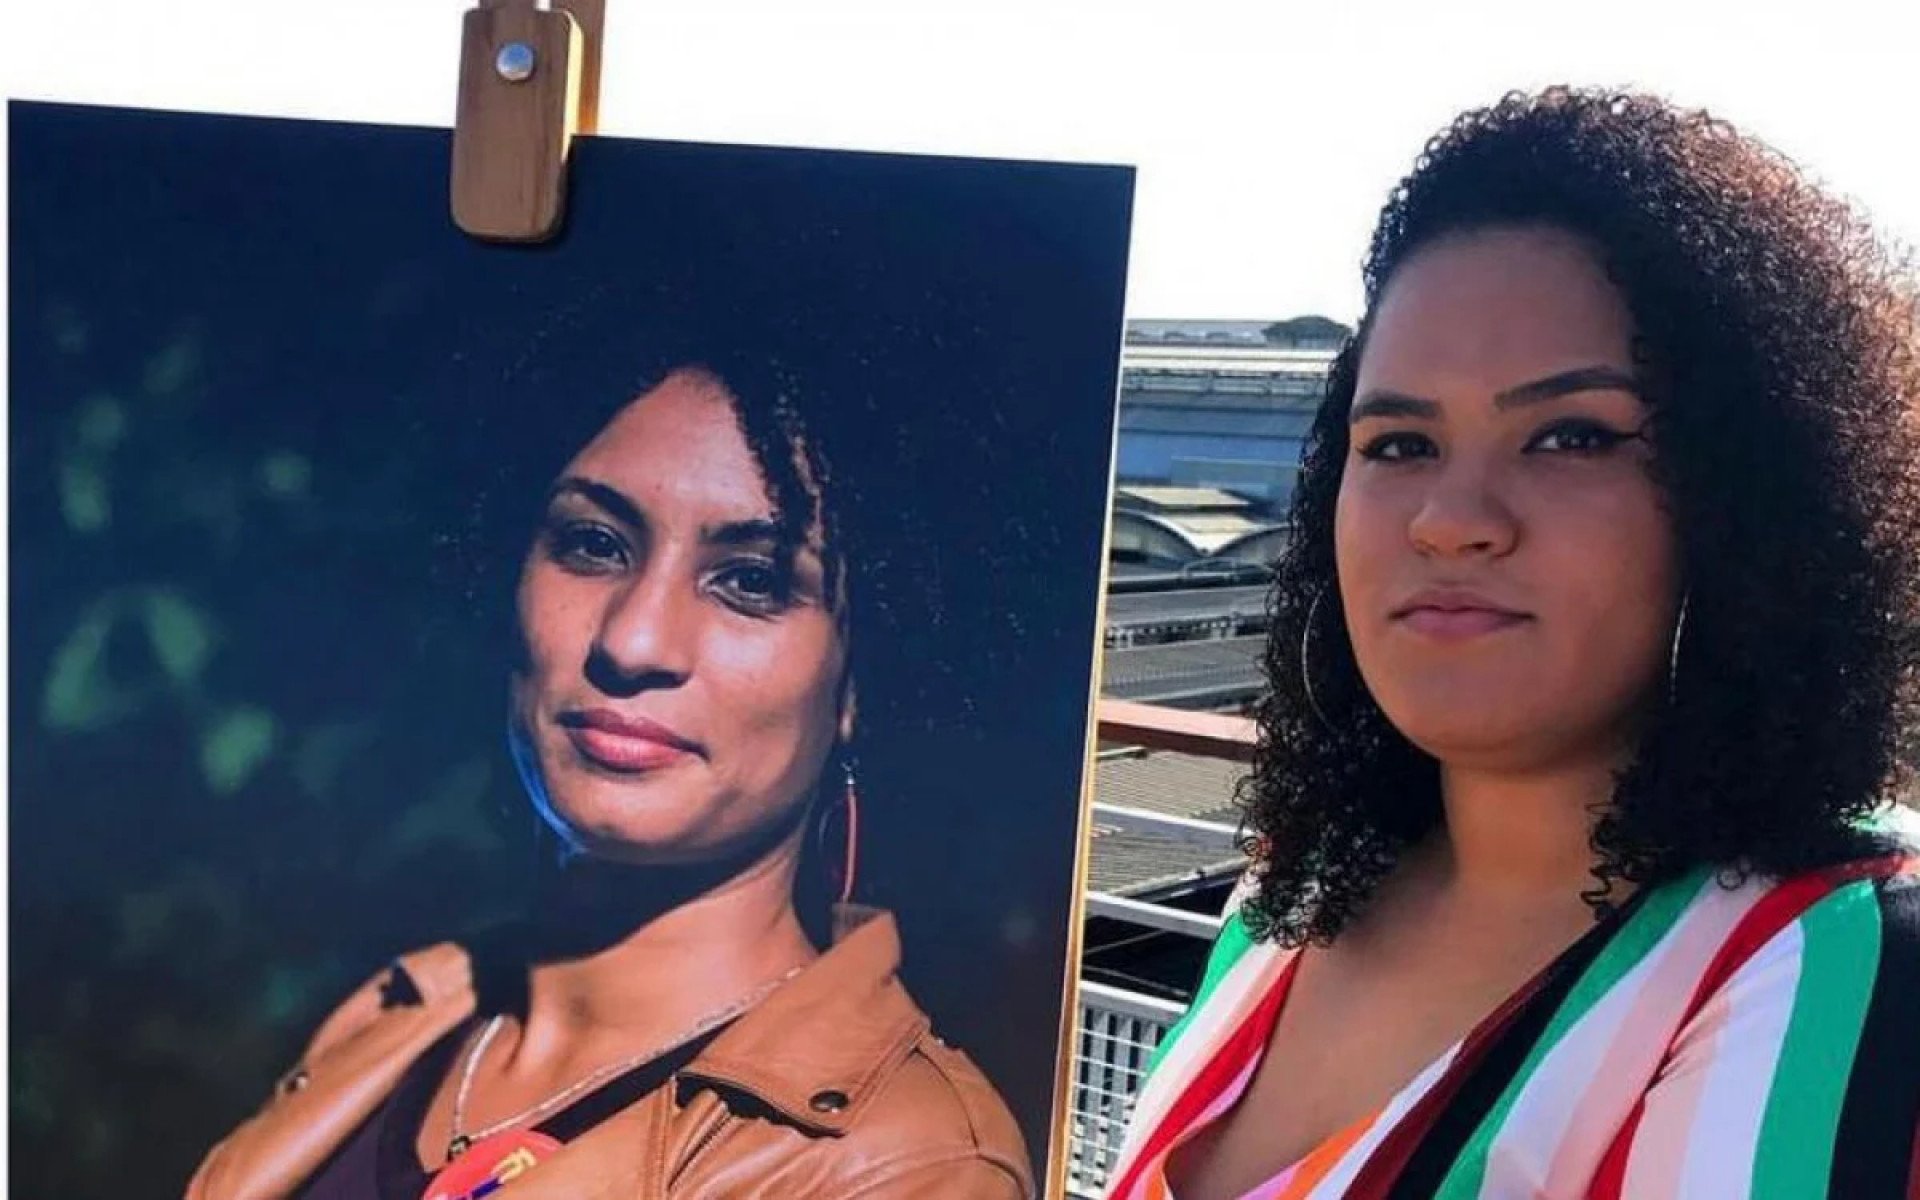 Luyara Santos, de 23 anos, segurando a foto de sua mãe, Marielle Franco - Reprodução / Redes sociais